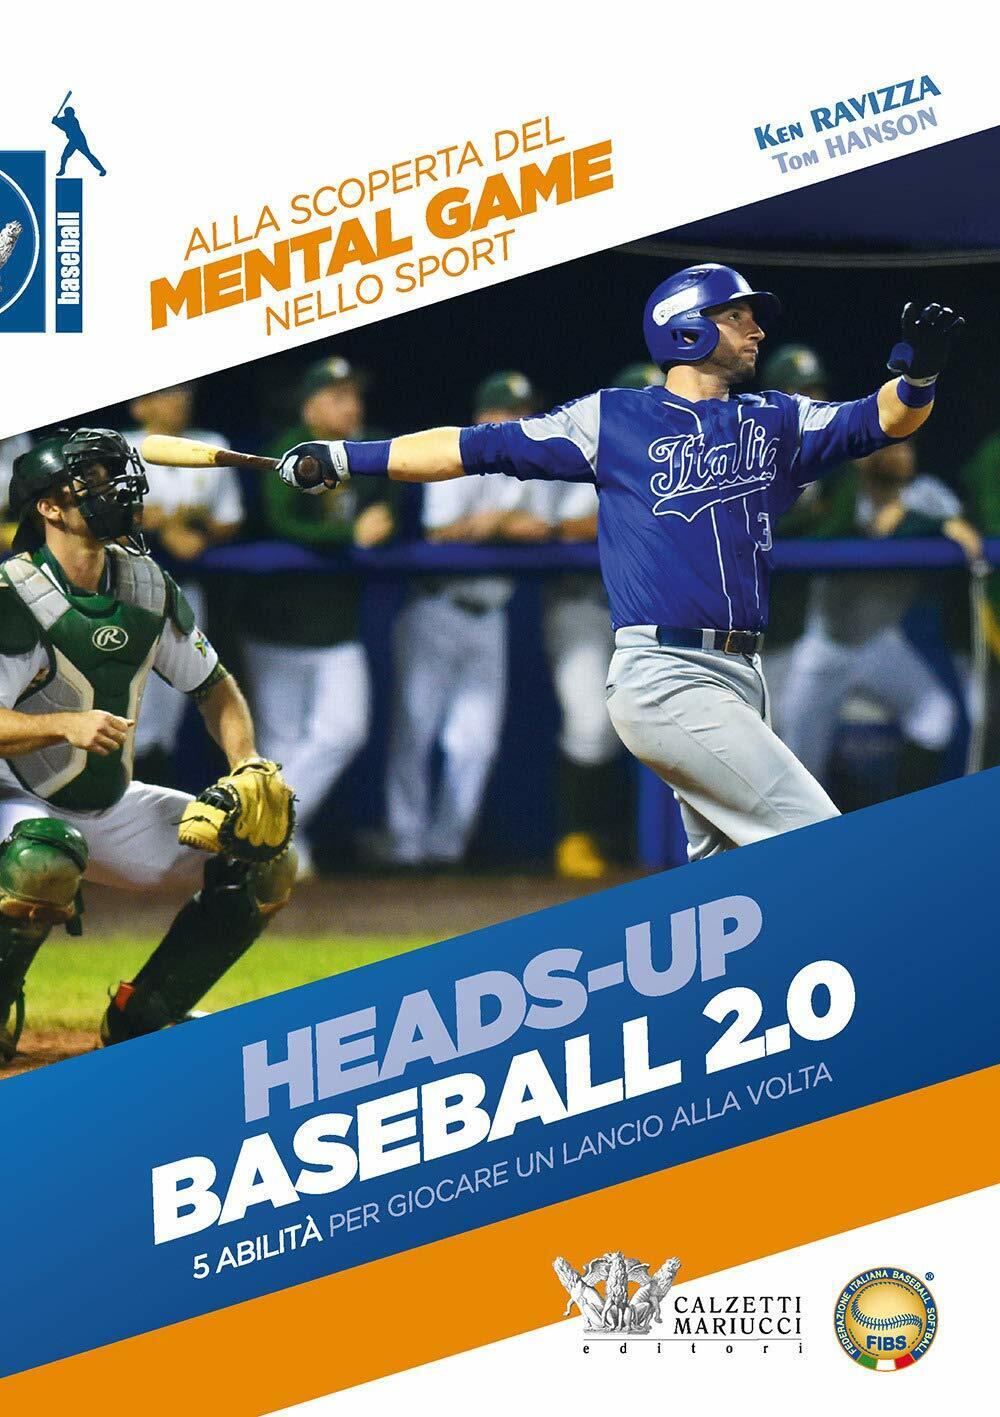 Heads-up. Baseball 2.0 - Ken Ravizza, Tom Hanson - Calzetti Mariucci, 2020 libro usato